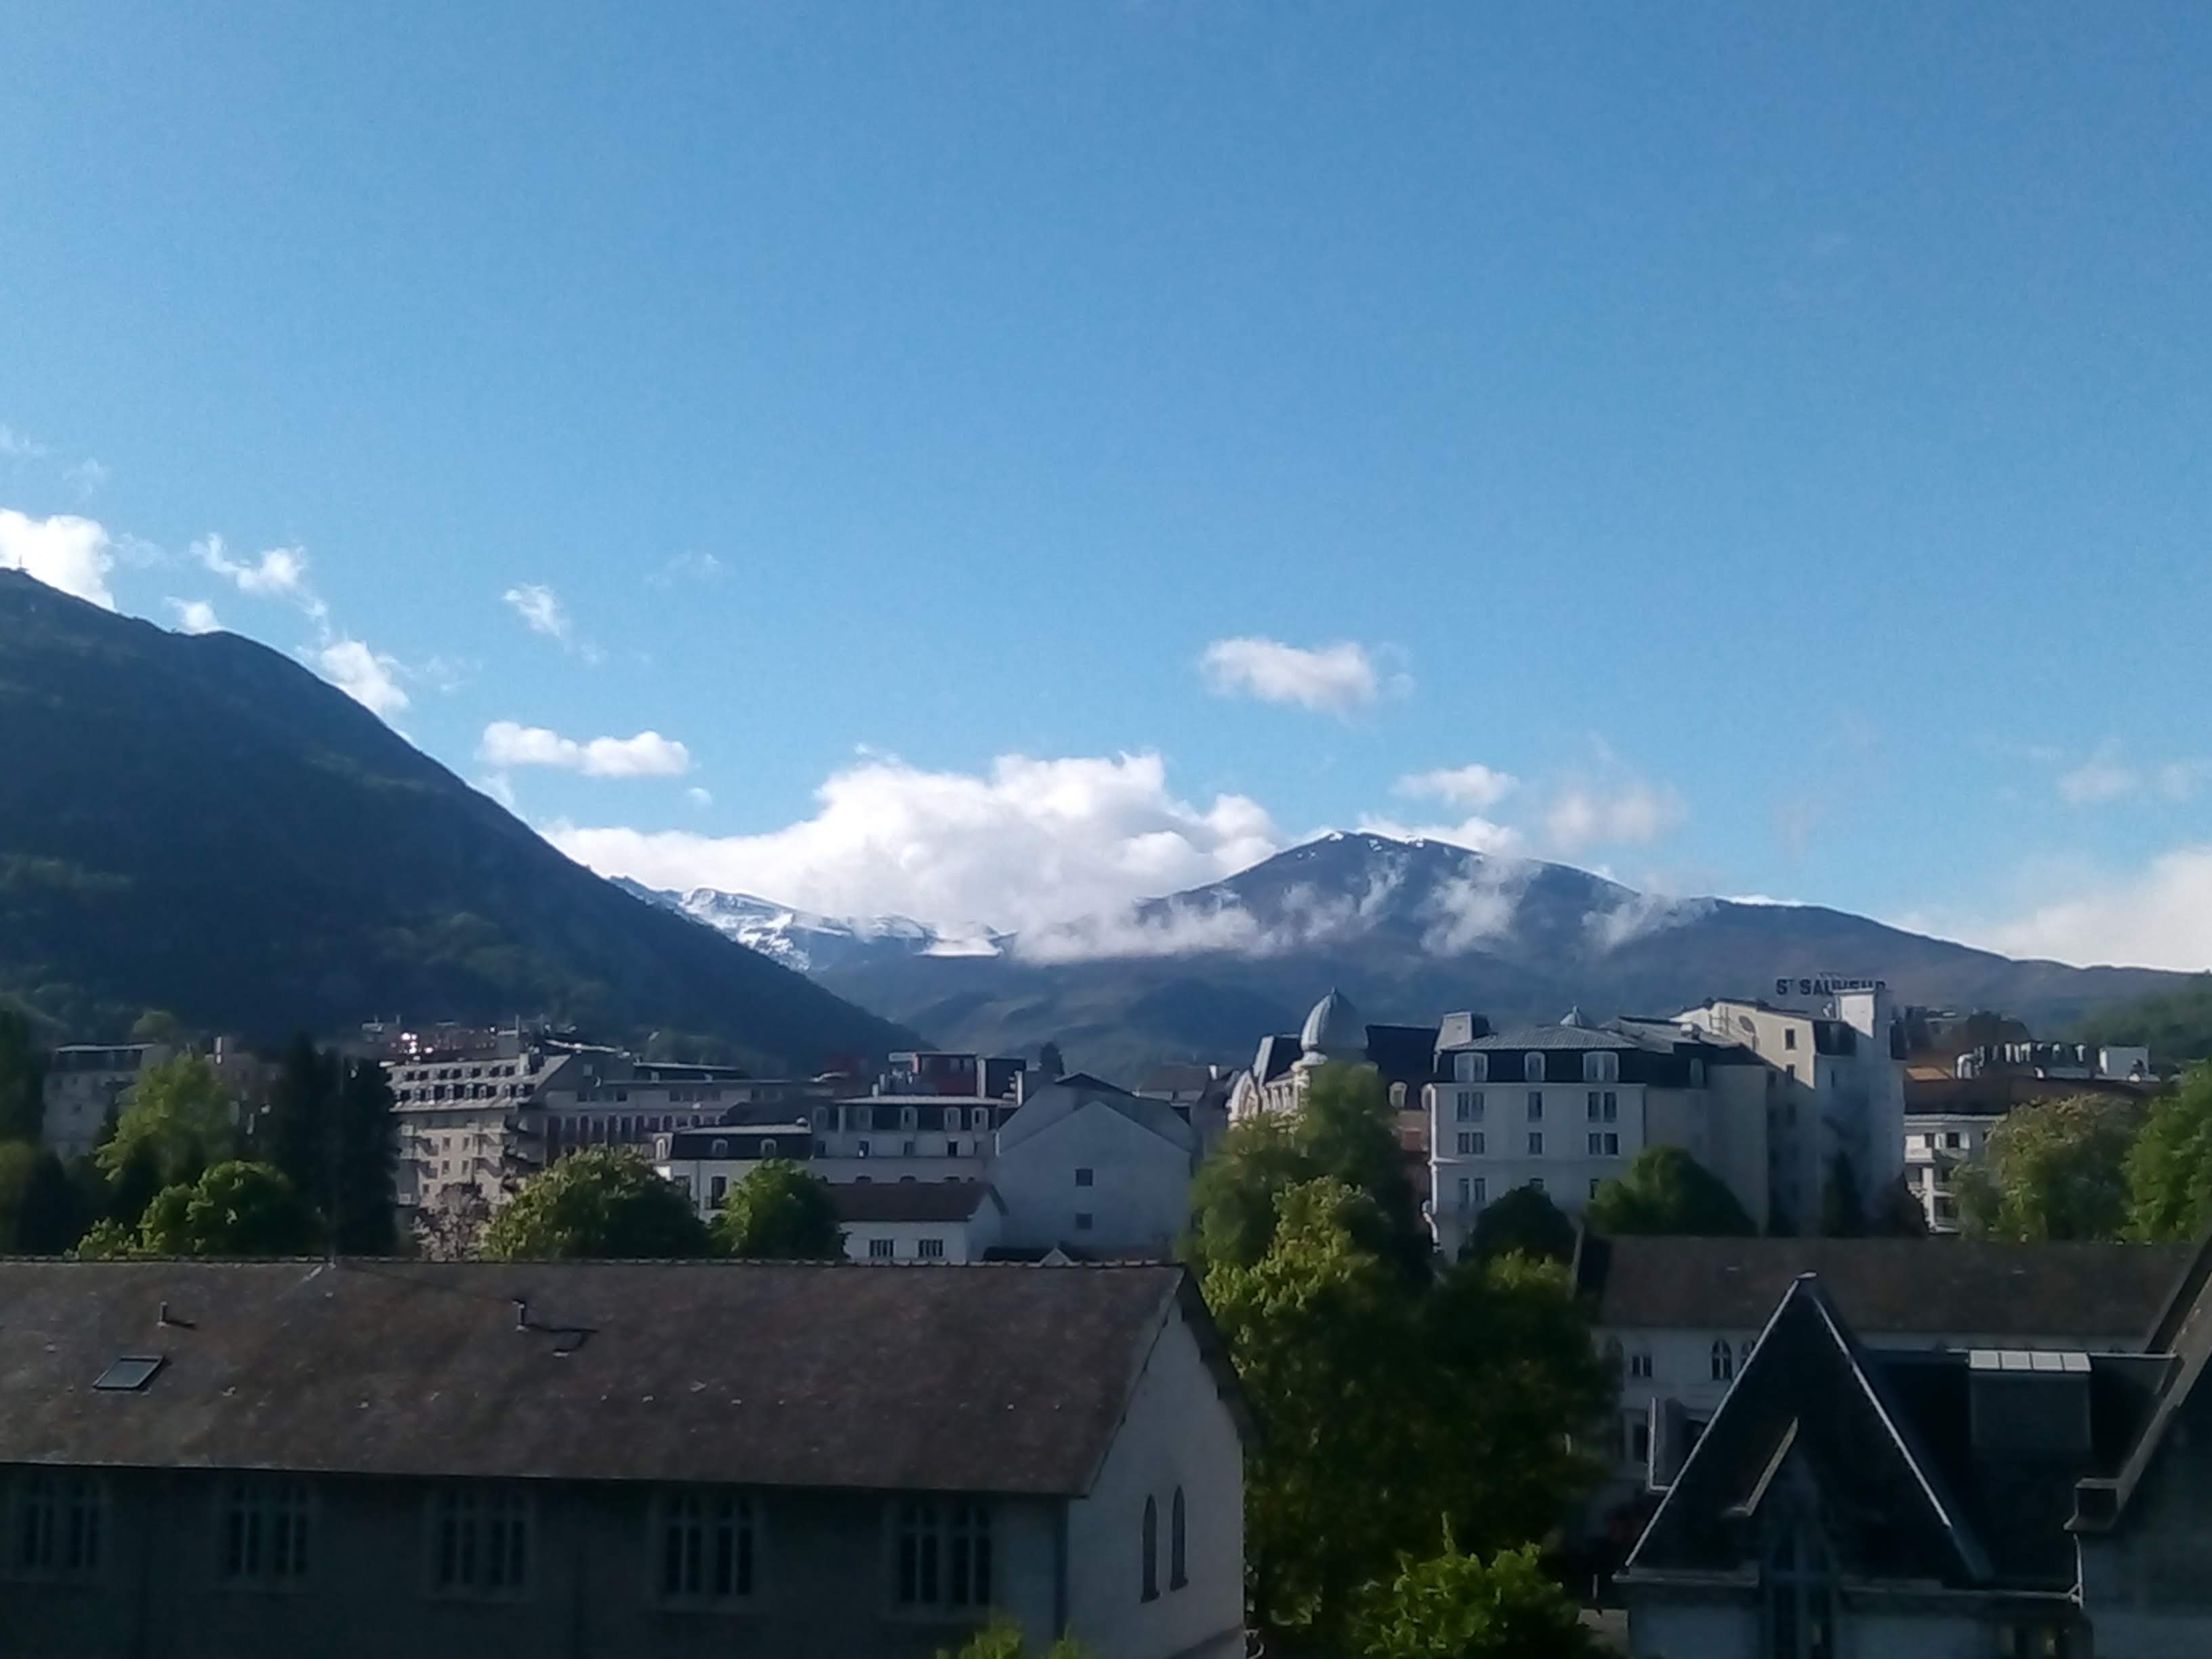 Vue sur les Pyrénées en remontant à la Gare de Lourdes, Hospitalité d'Evry avril 2019